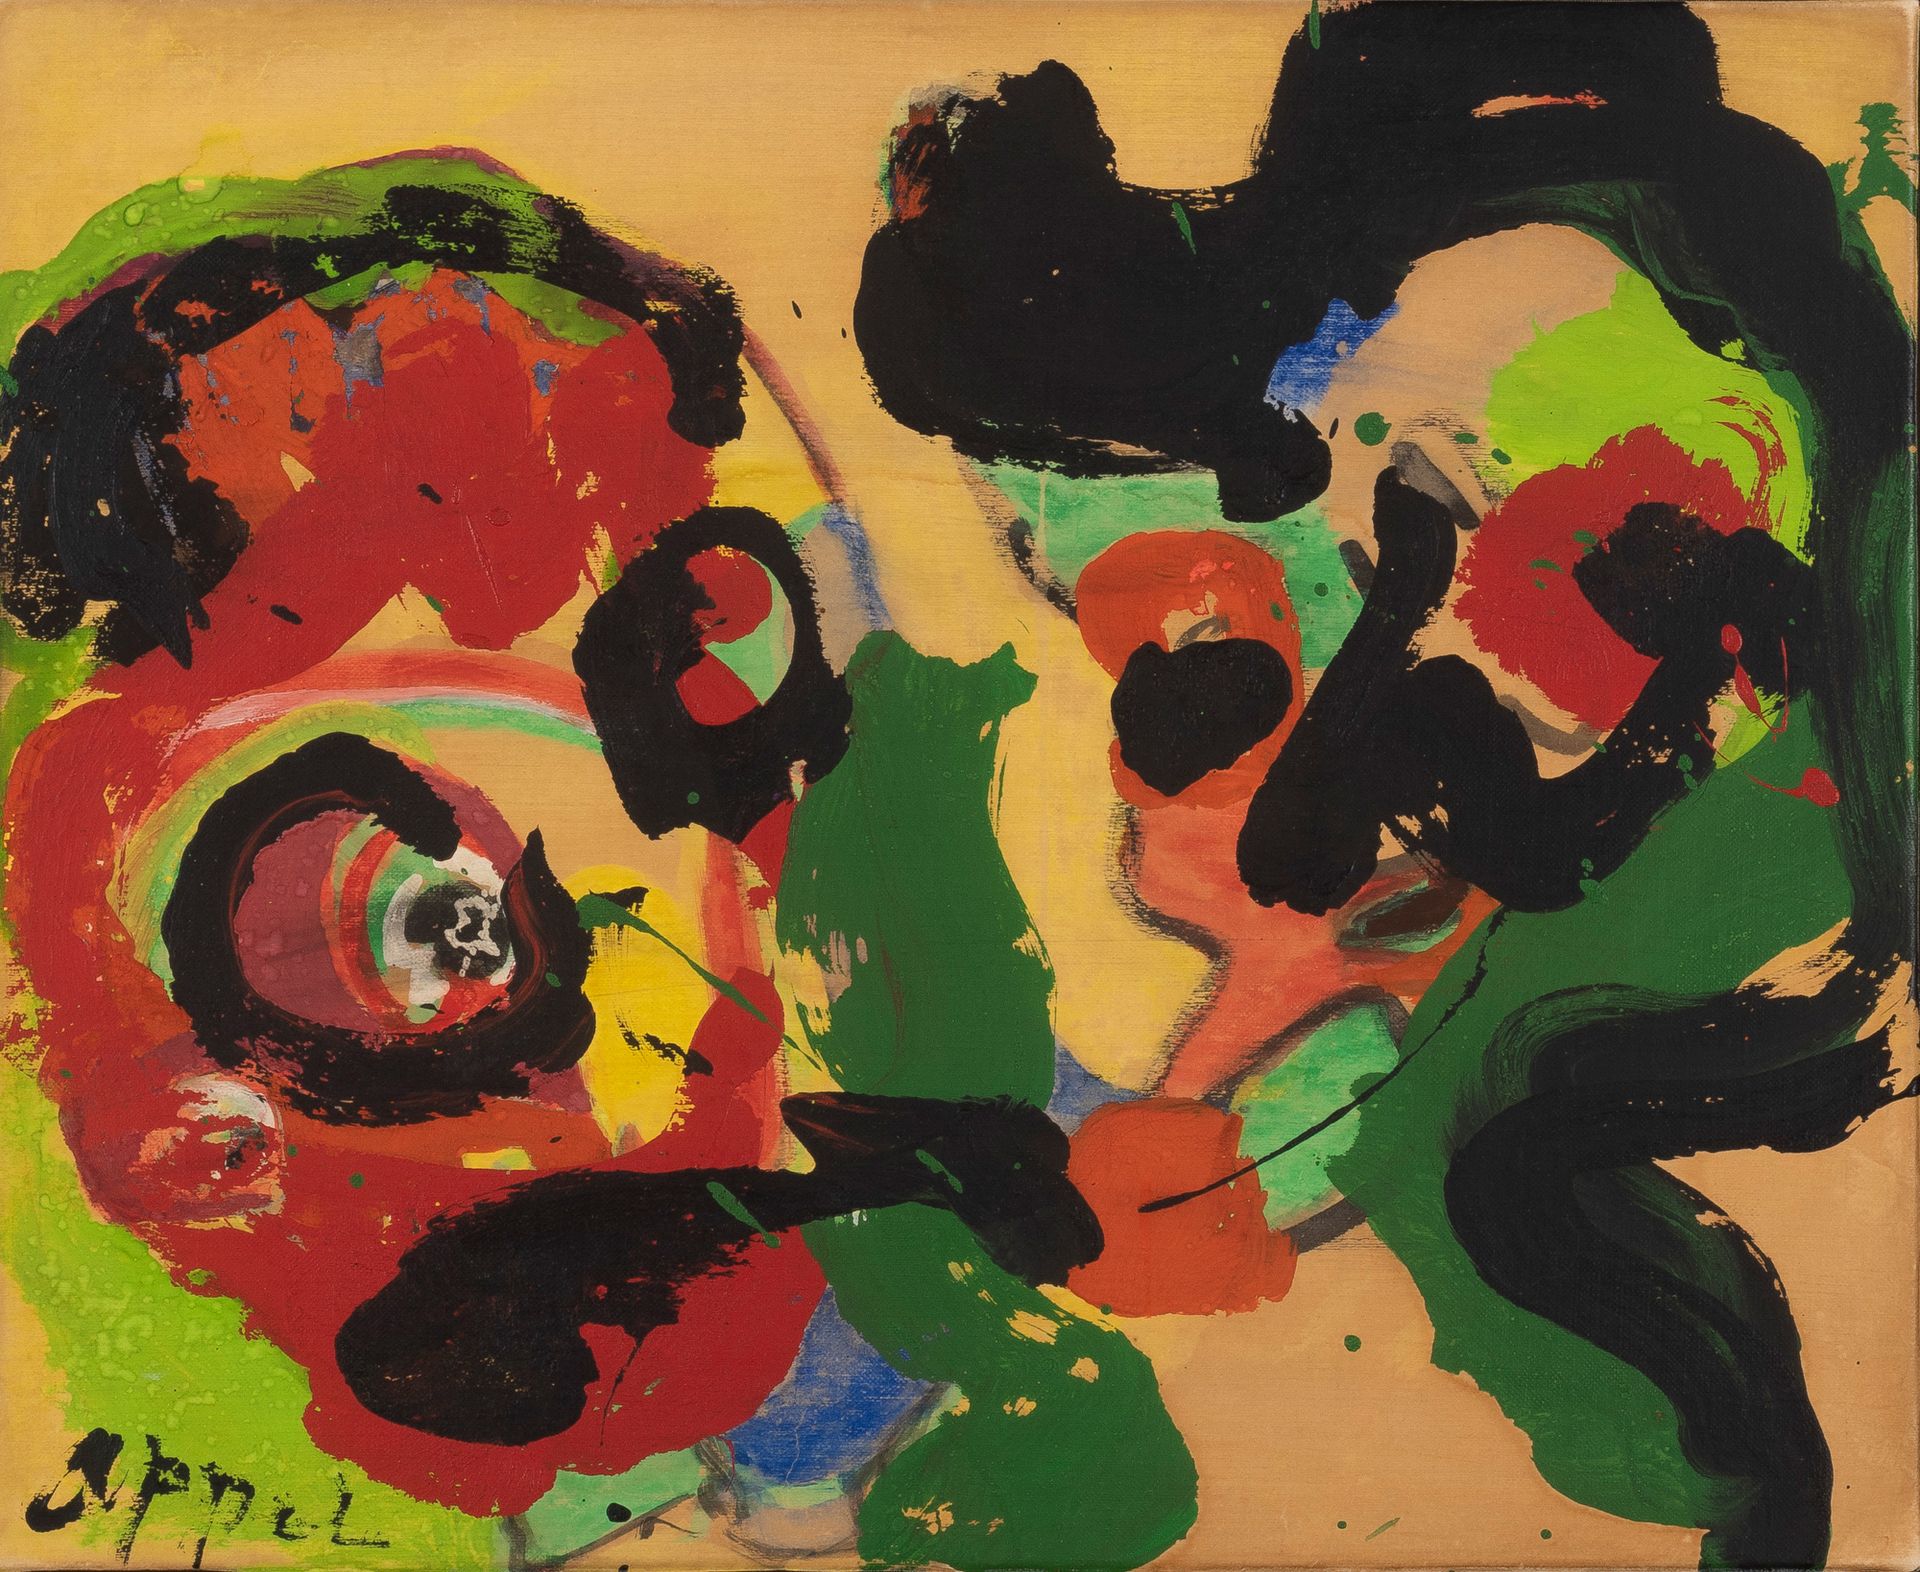 Karel Appel (1921-2006) Personnages, circa 1980
Acrylique sur papier sur toile.
&hellip;